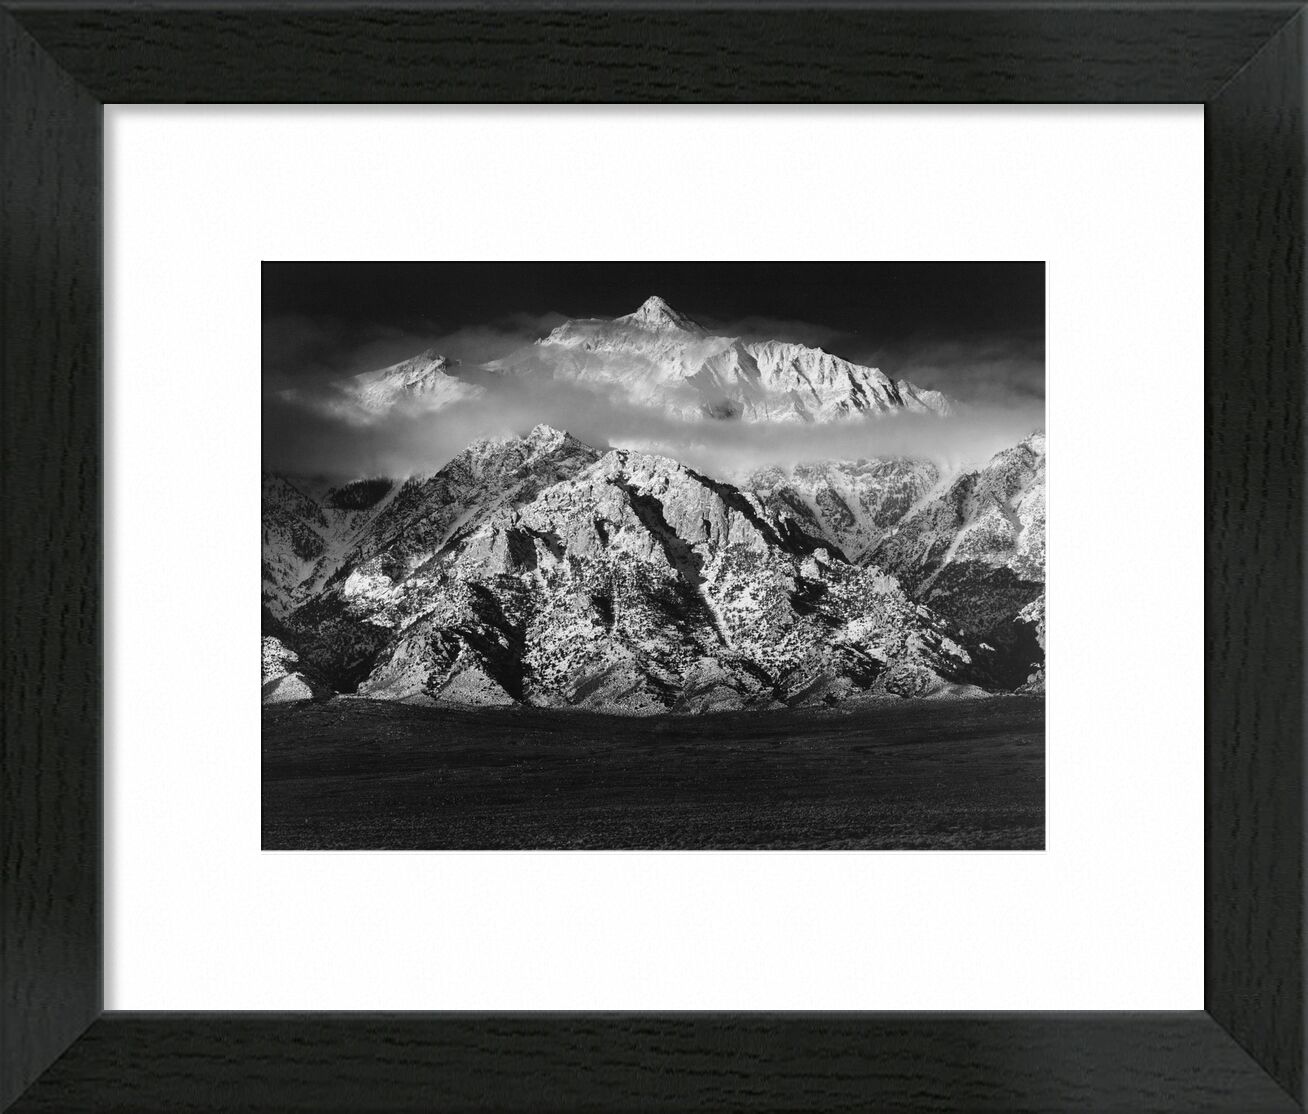 Mountain Williamson, Sierra Nevada 1949 von Bildende Kunst, Prodi Art, ANSEL ADAMS, Schwarz und weiß, Wiese, Wolken, Himmel, Berge